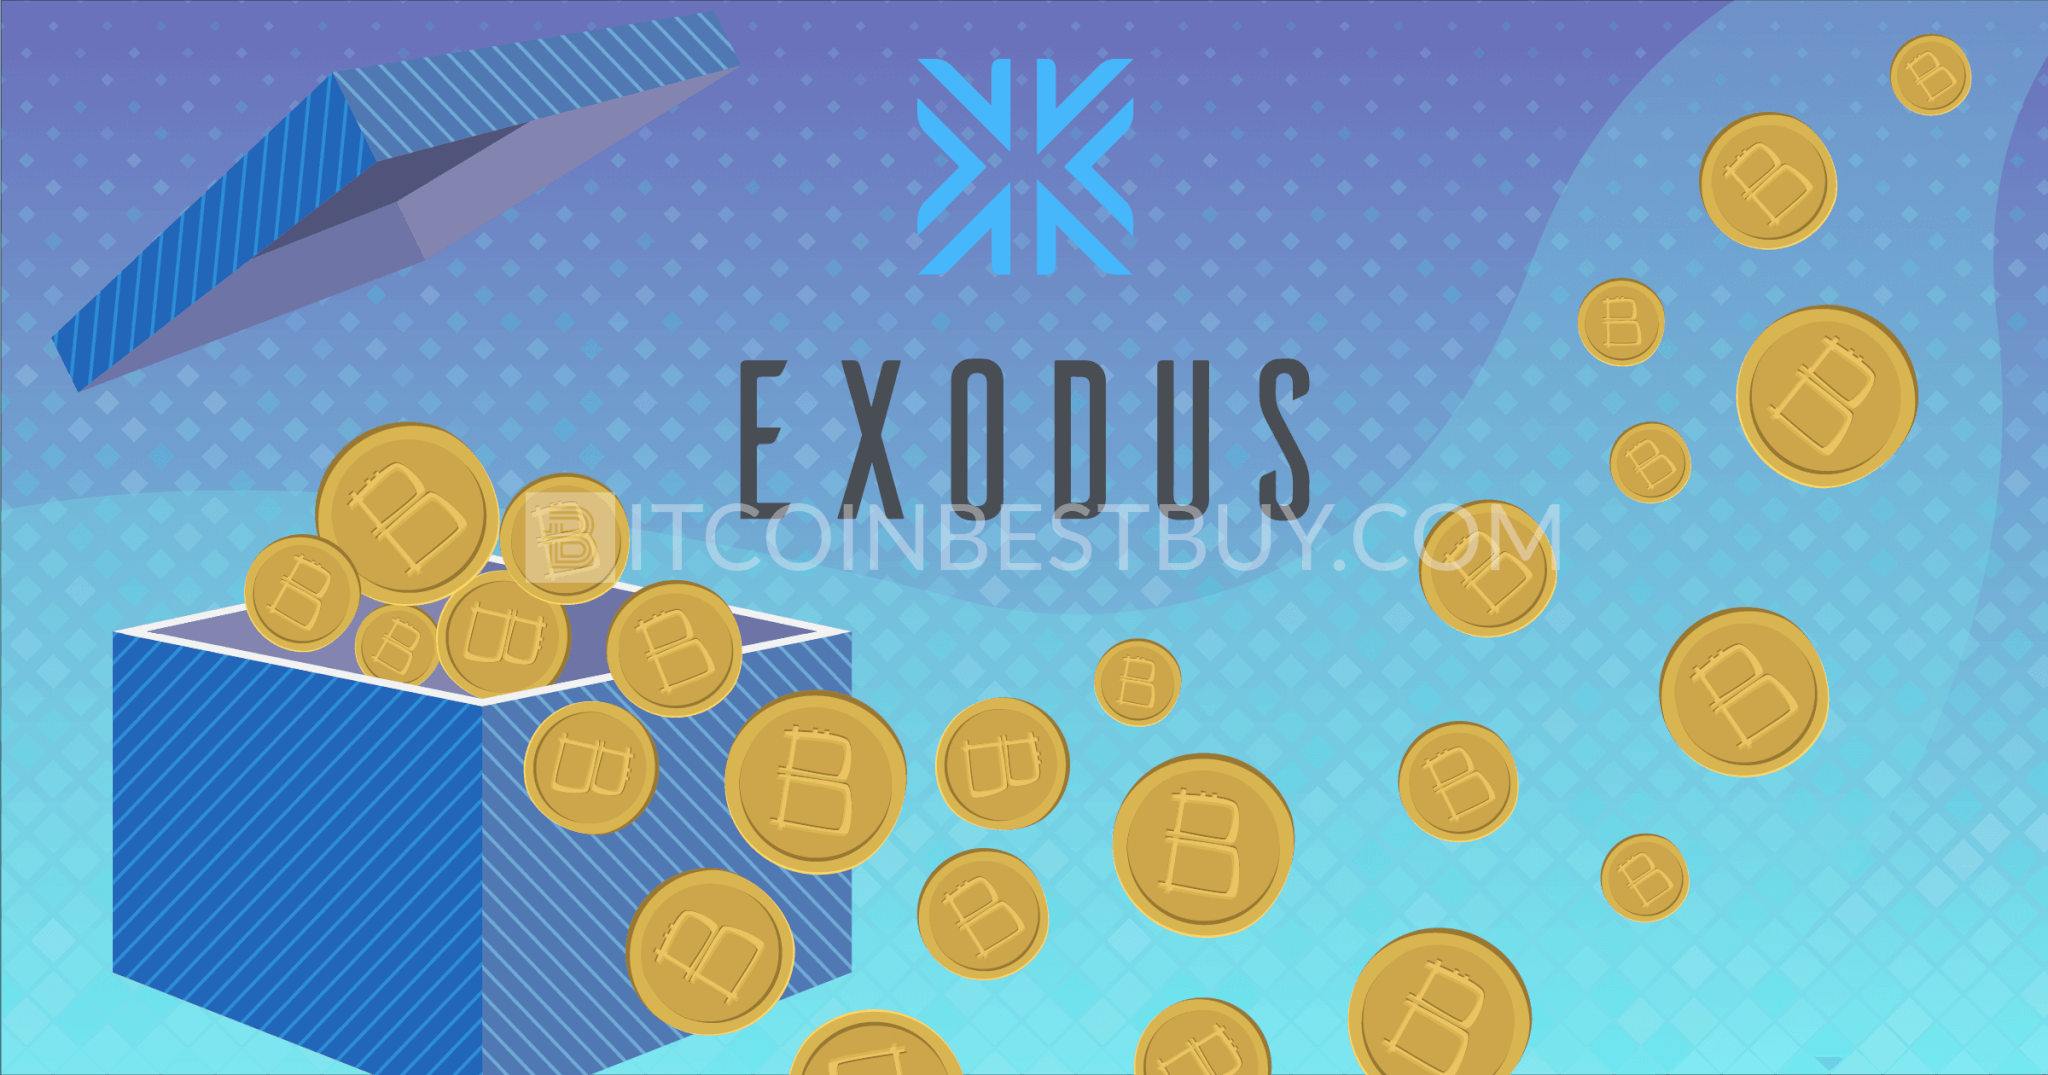 Revizuirea portofelului bitcoin Exodus